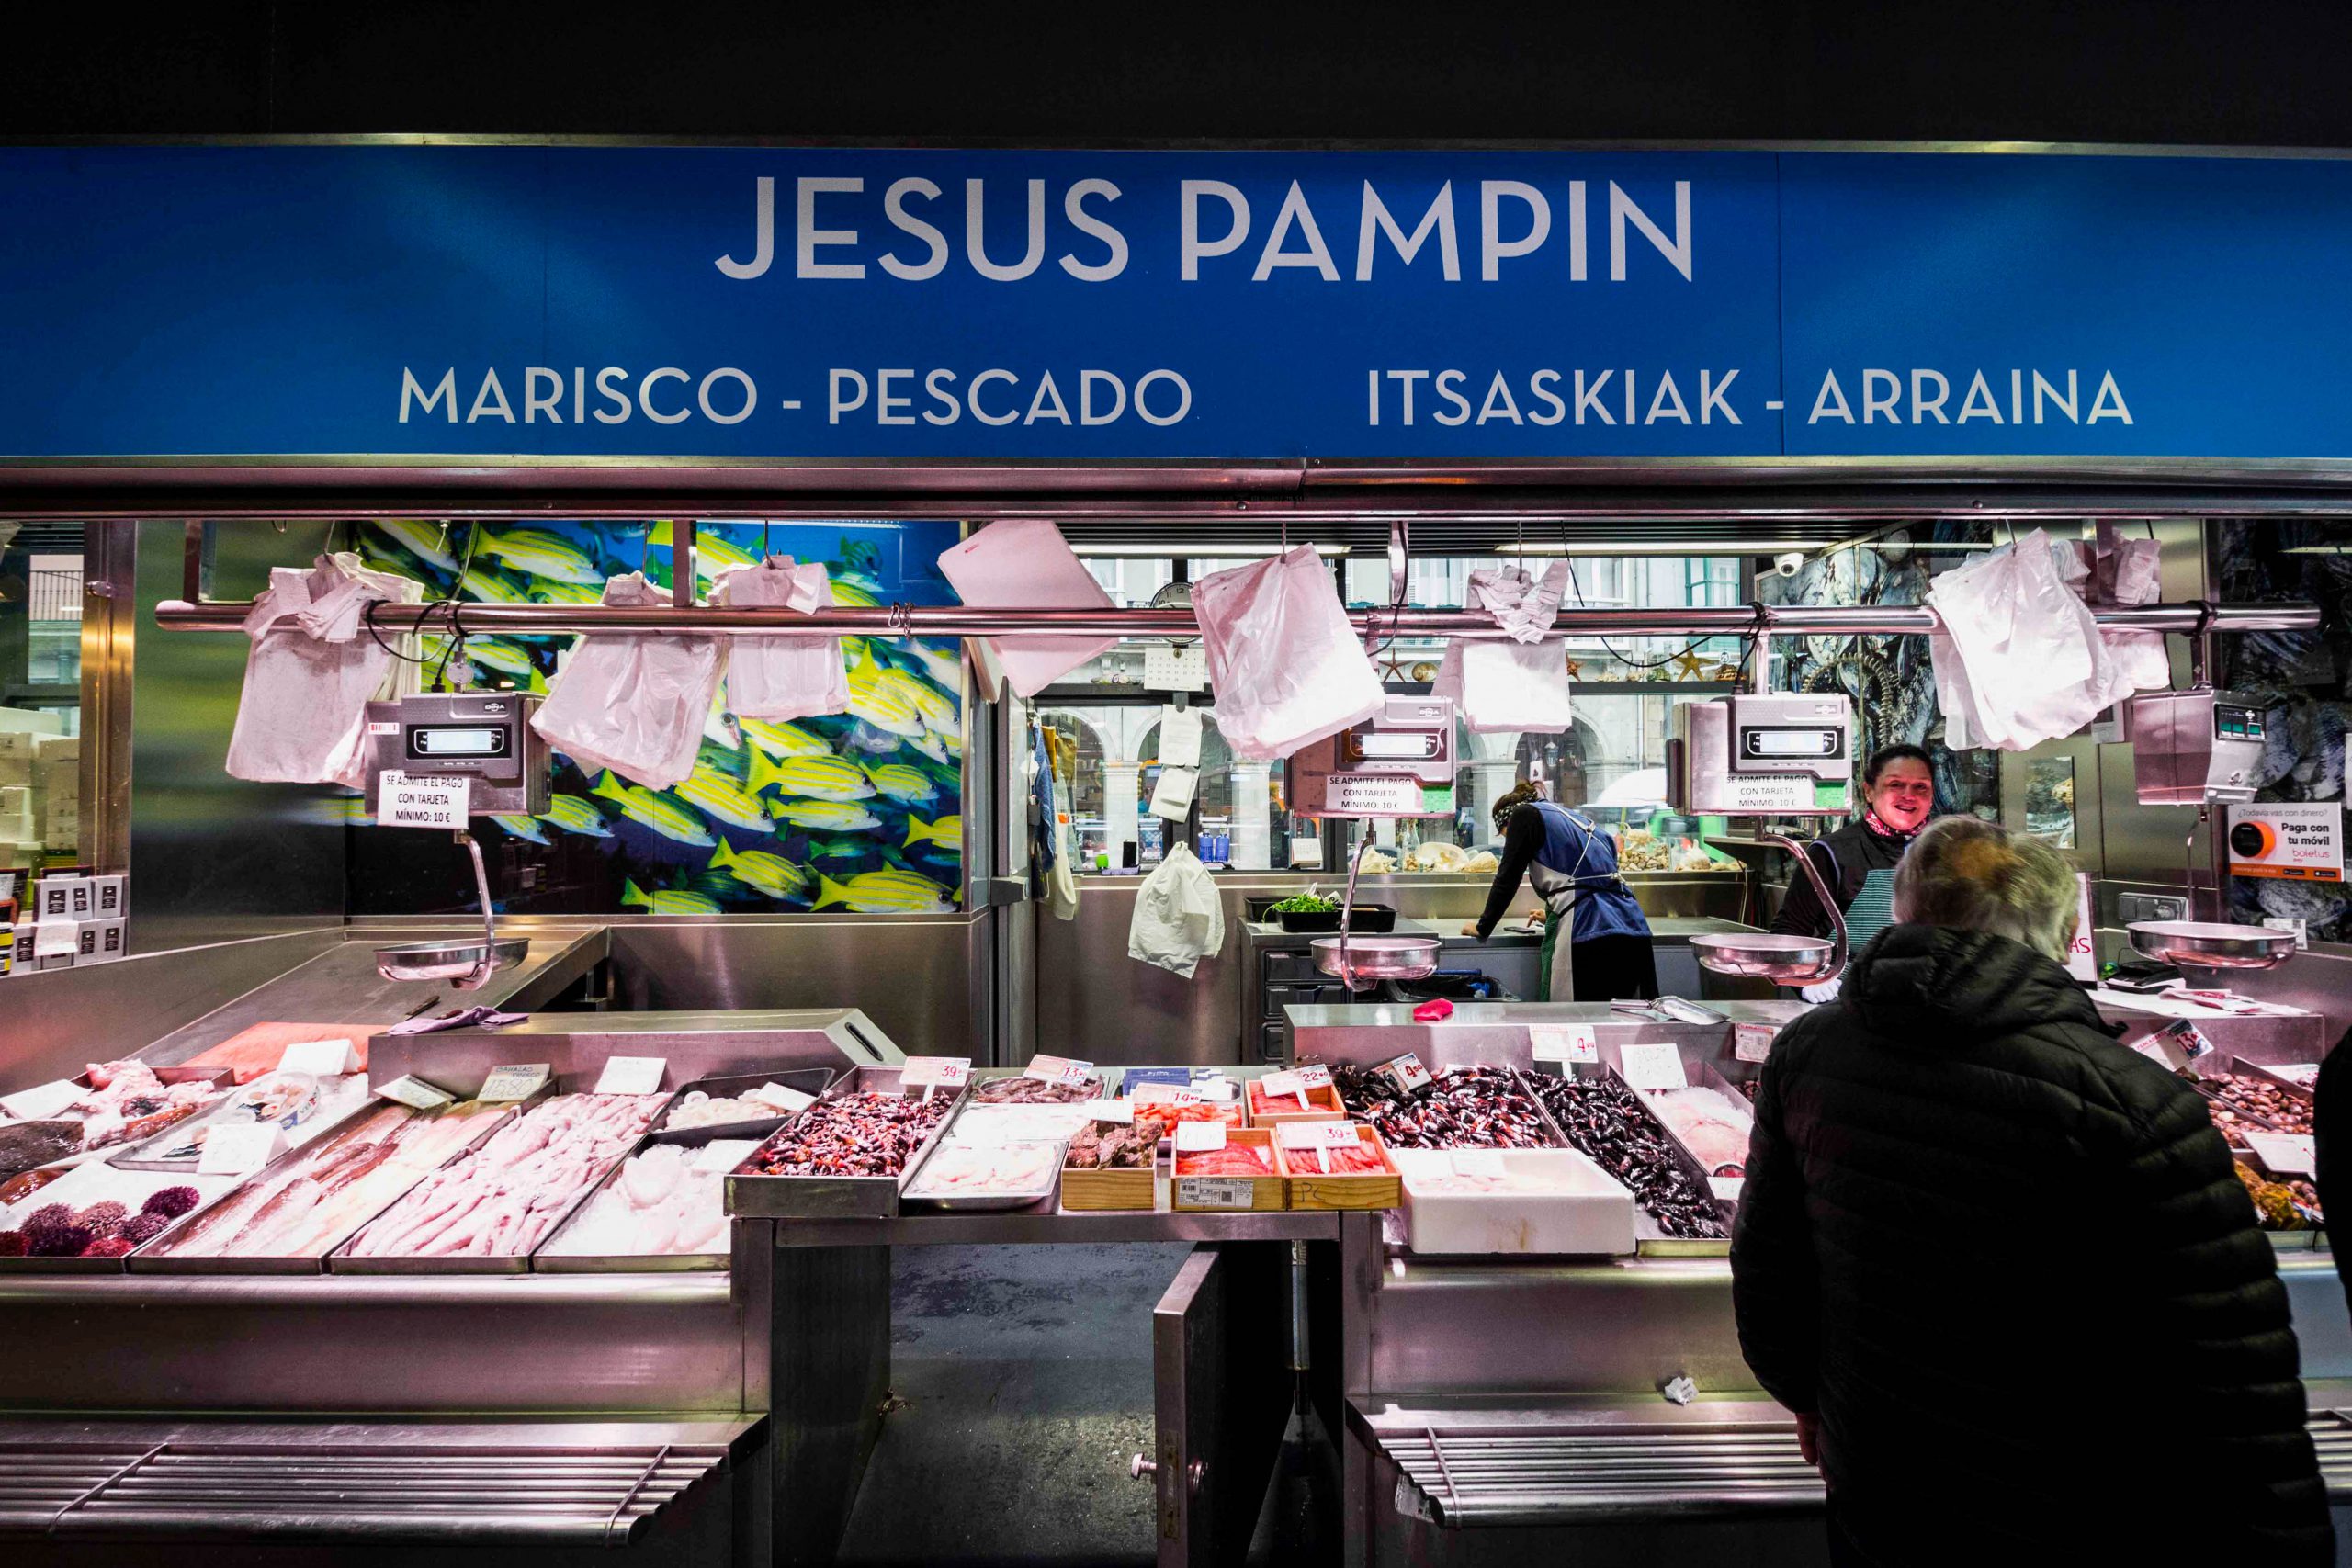 Marisco y pescado Jesus Pampin